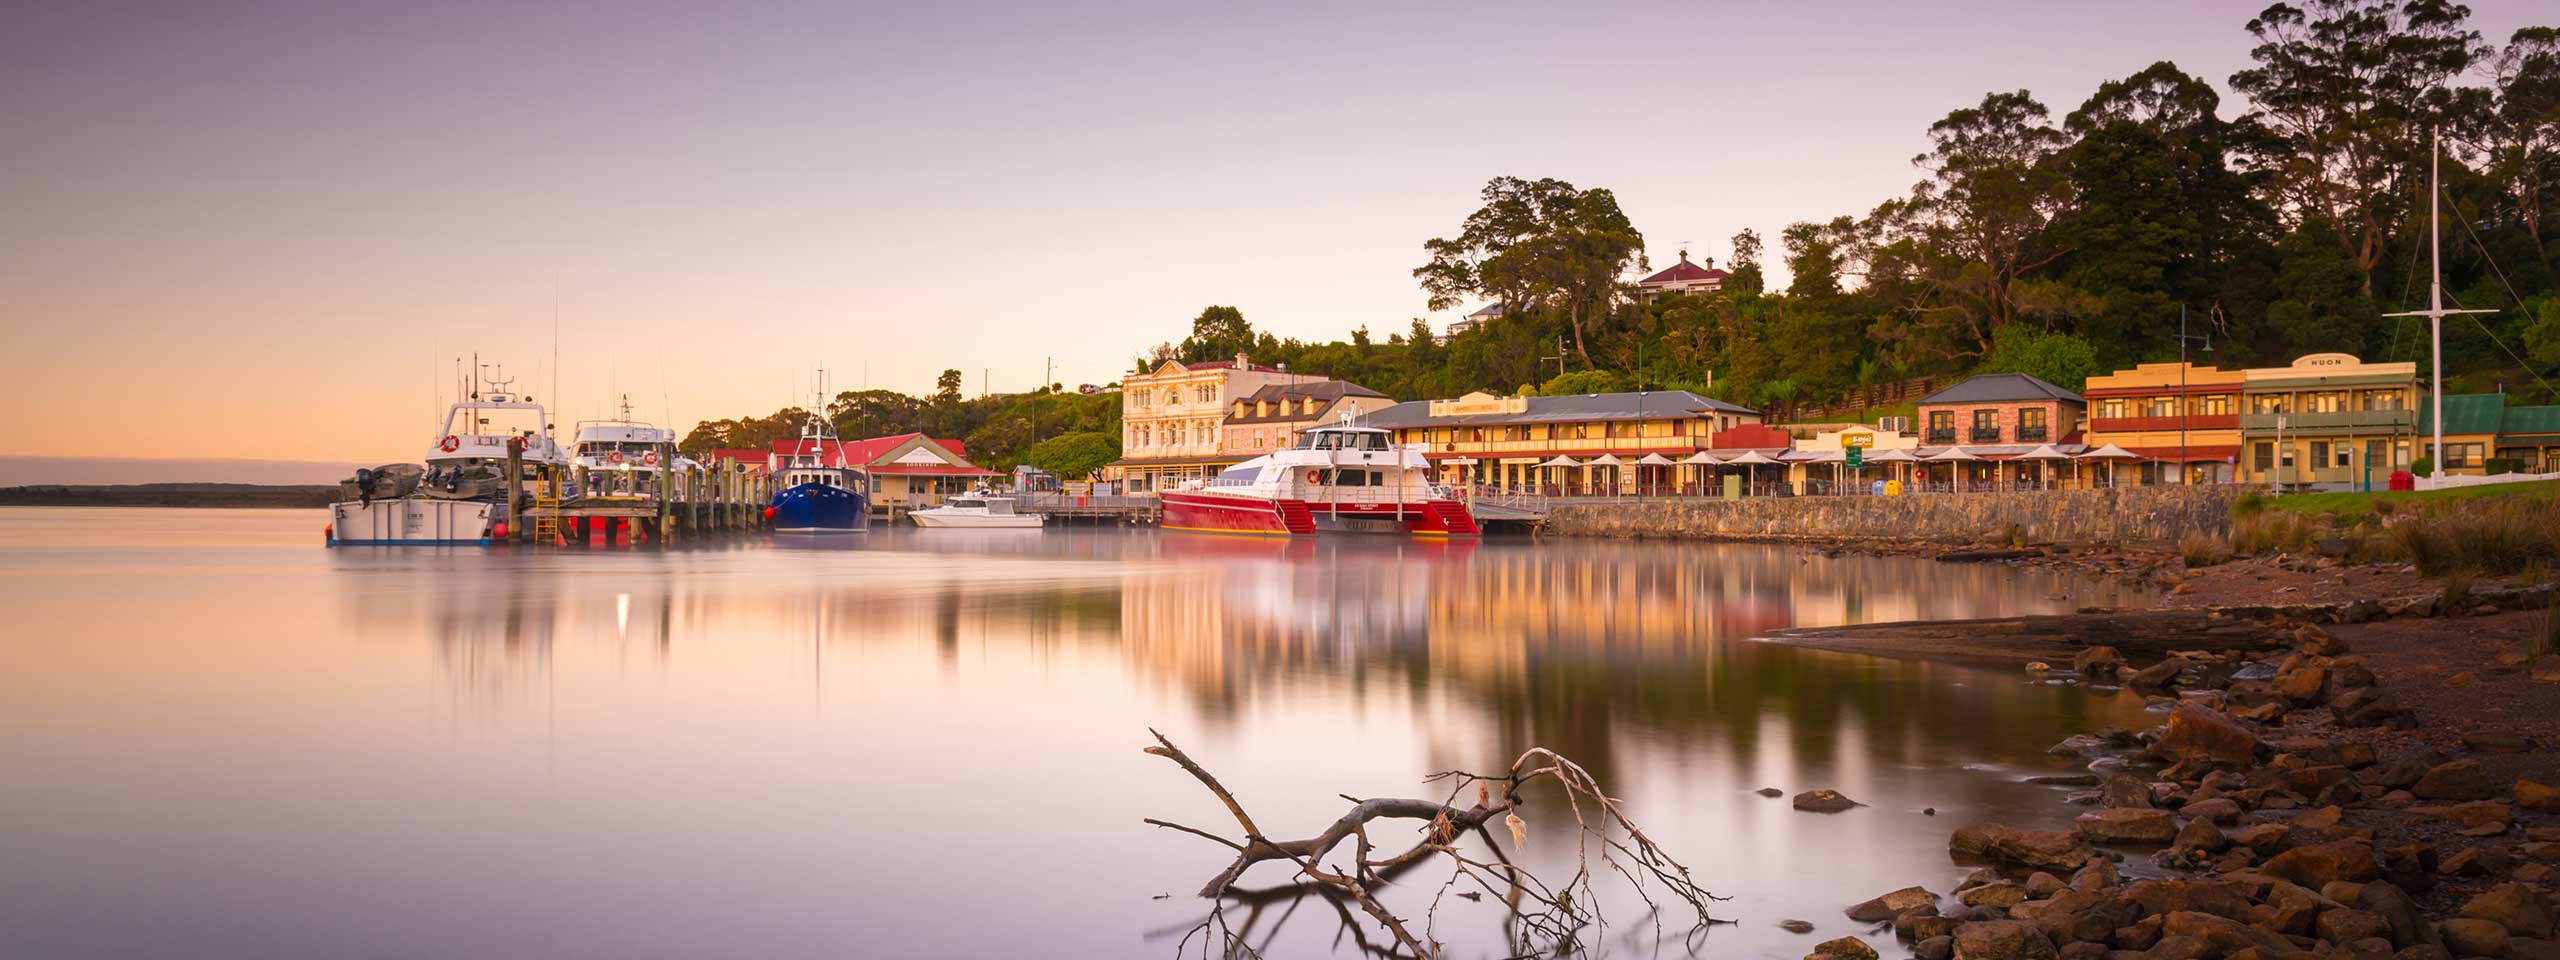 Strahan, Tasmania